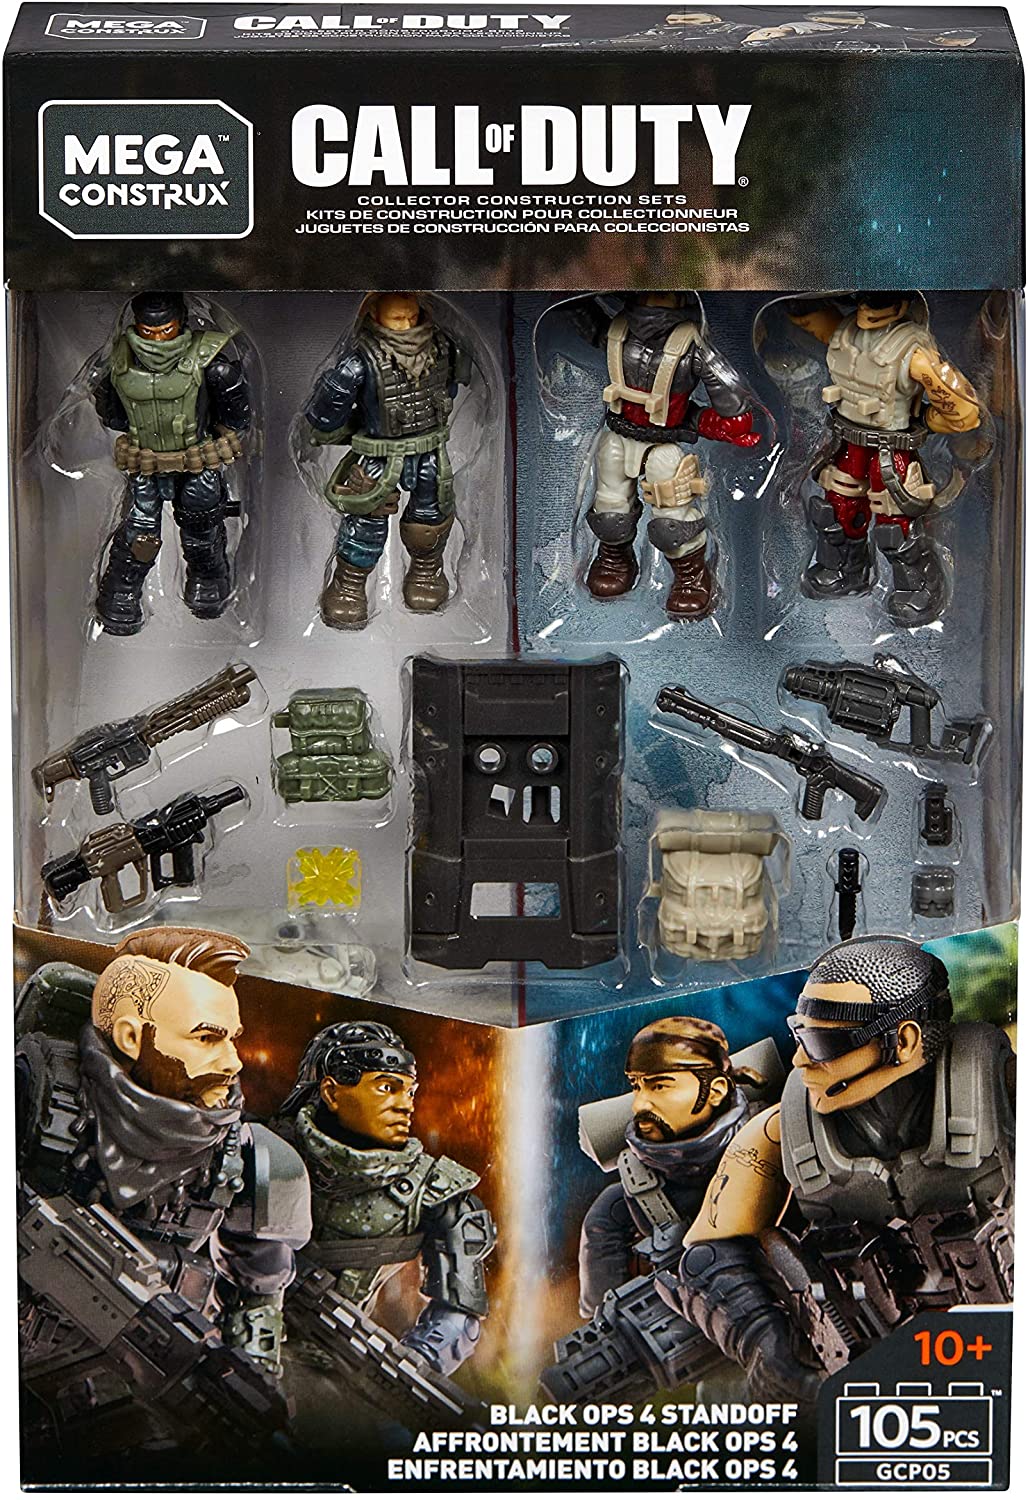 Mega Construx Call of Duty Black Ops 4 Standoff Figures | Box